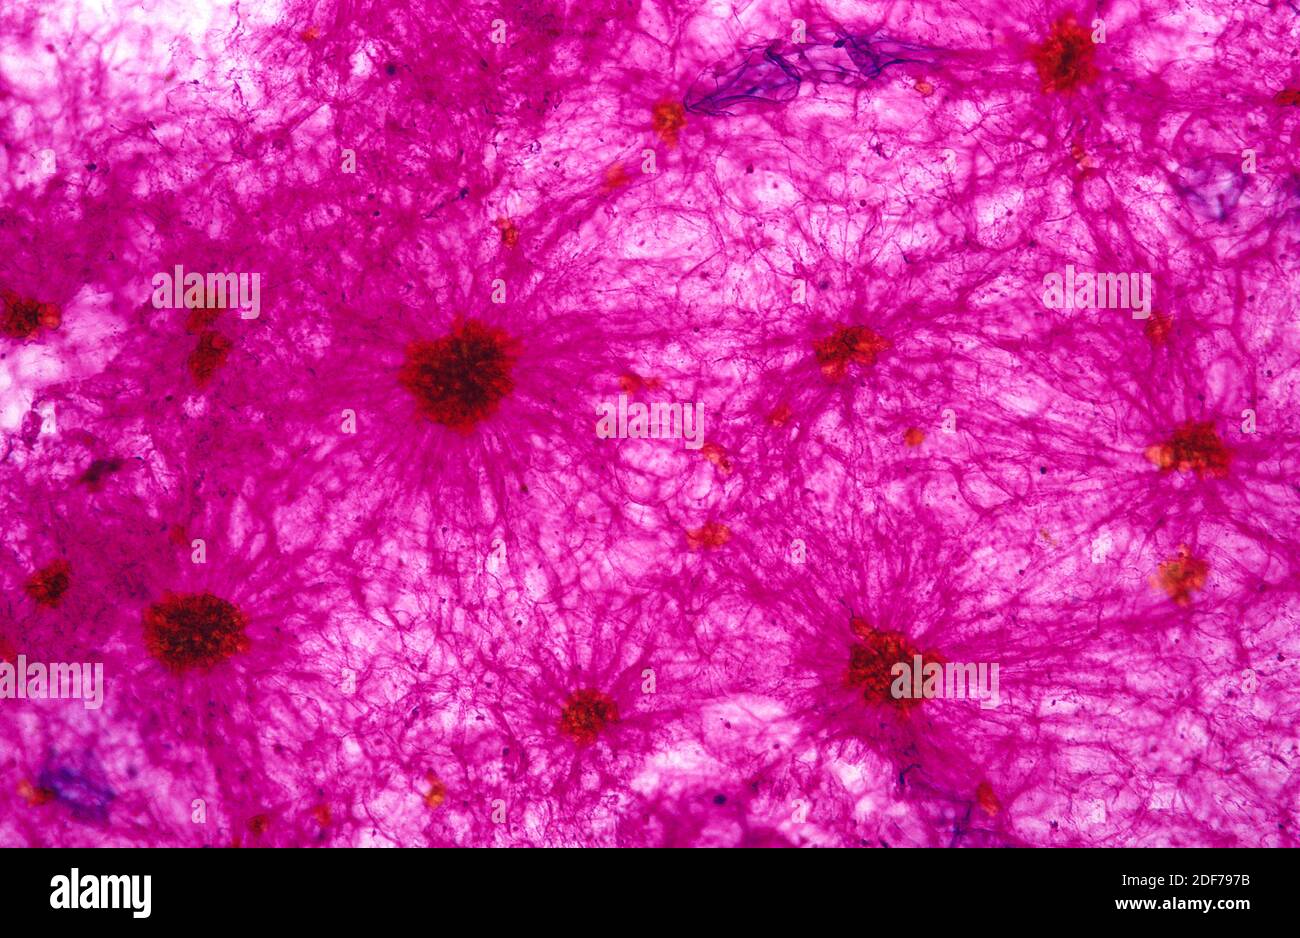 Los esclereidos son una especie de esclerenquimma, un tejido vegetal de apoyo. Fotomicrografía de pera. Foto de stock